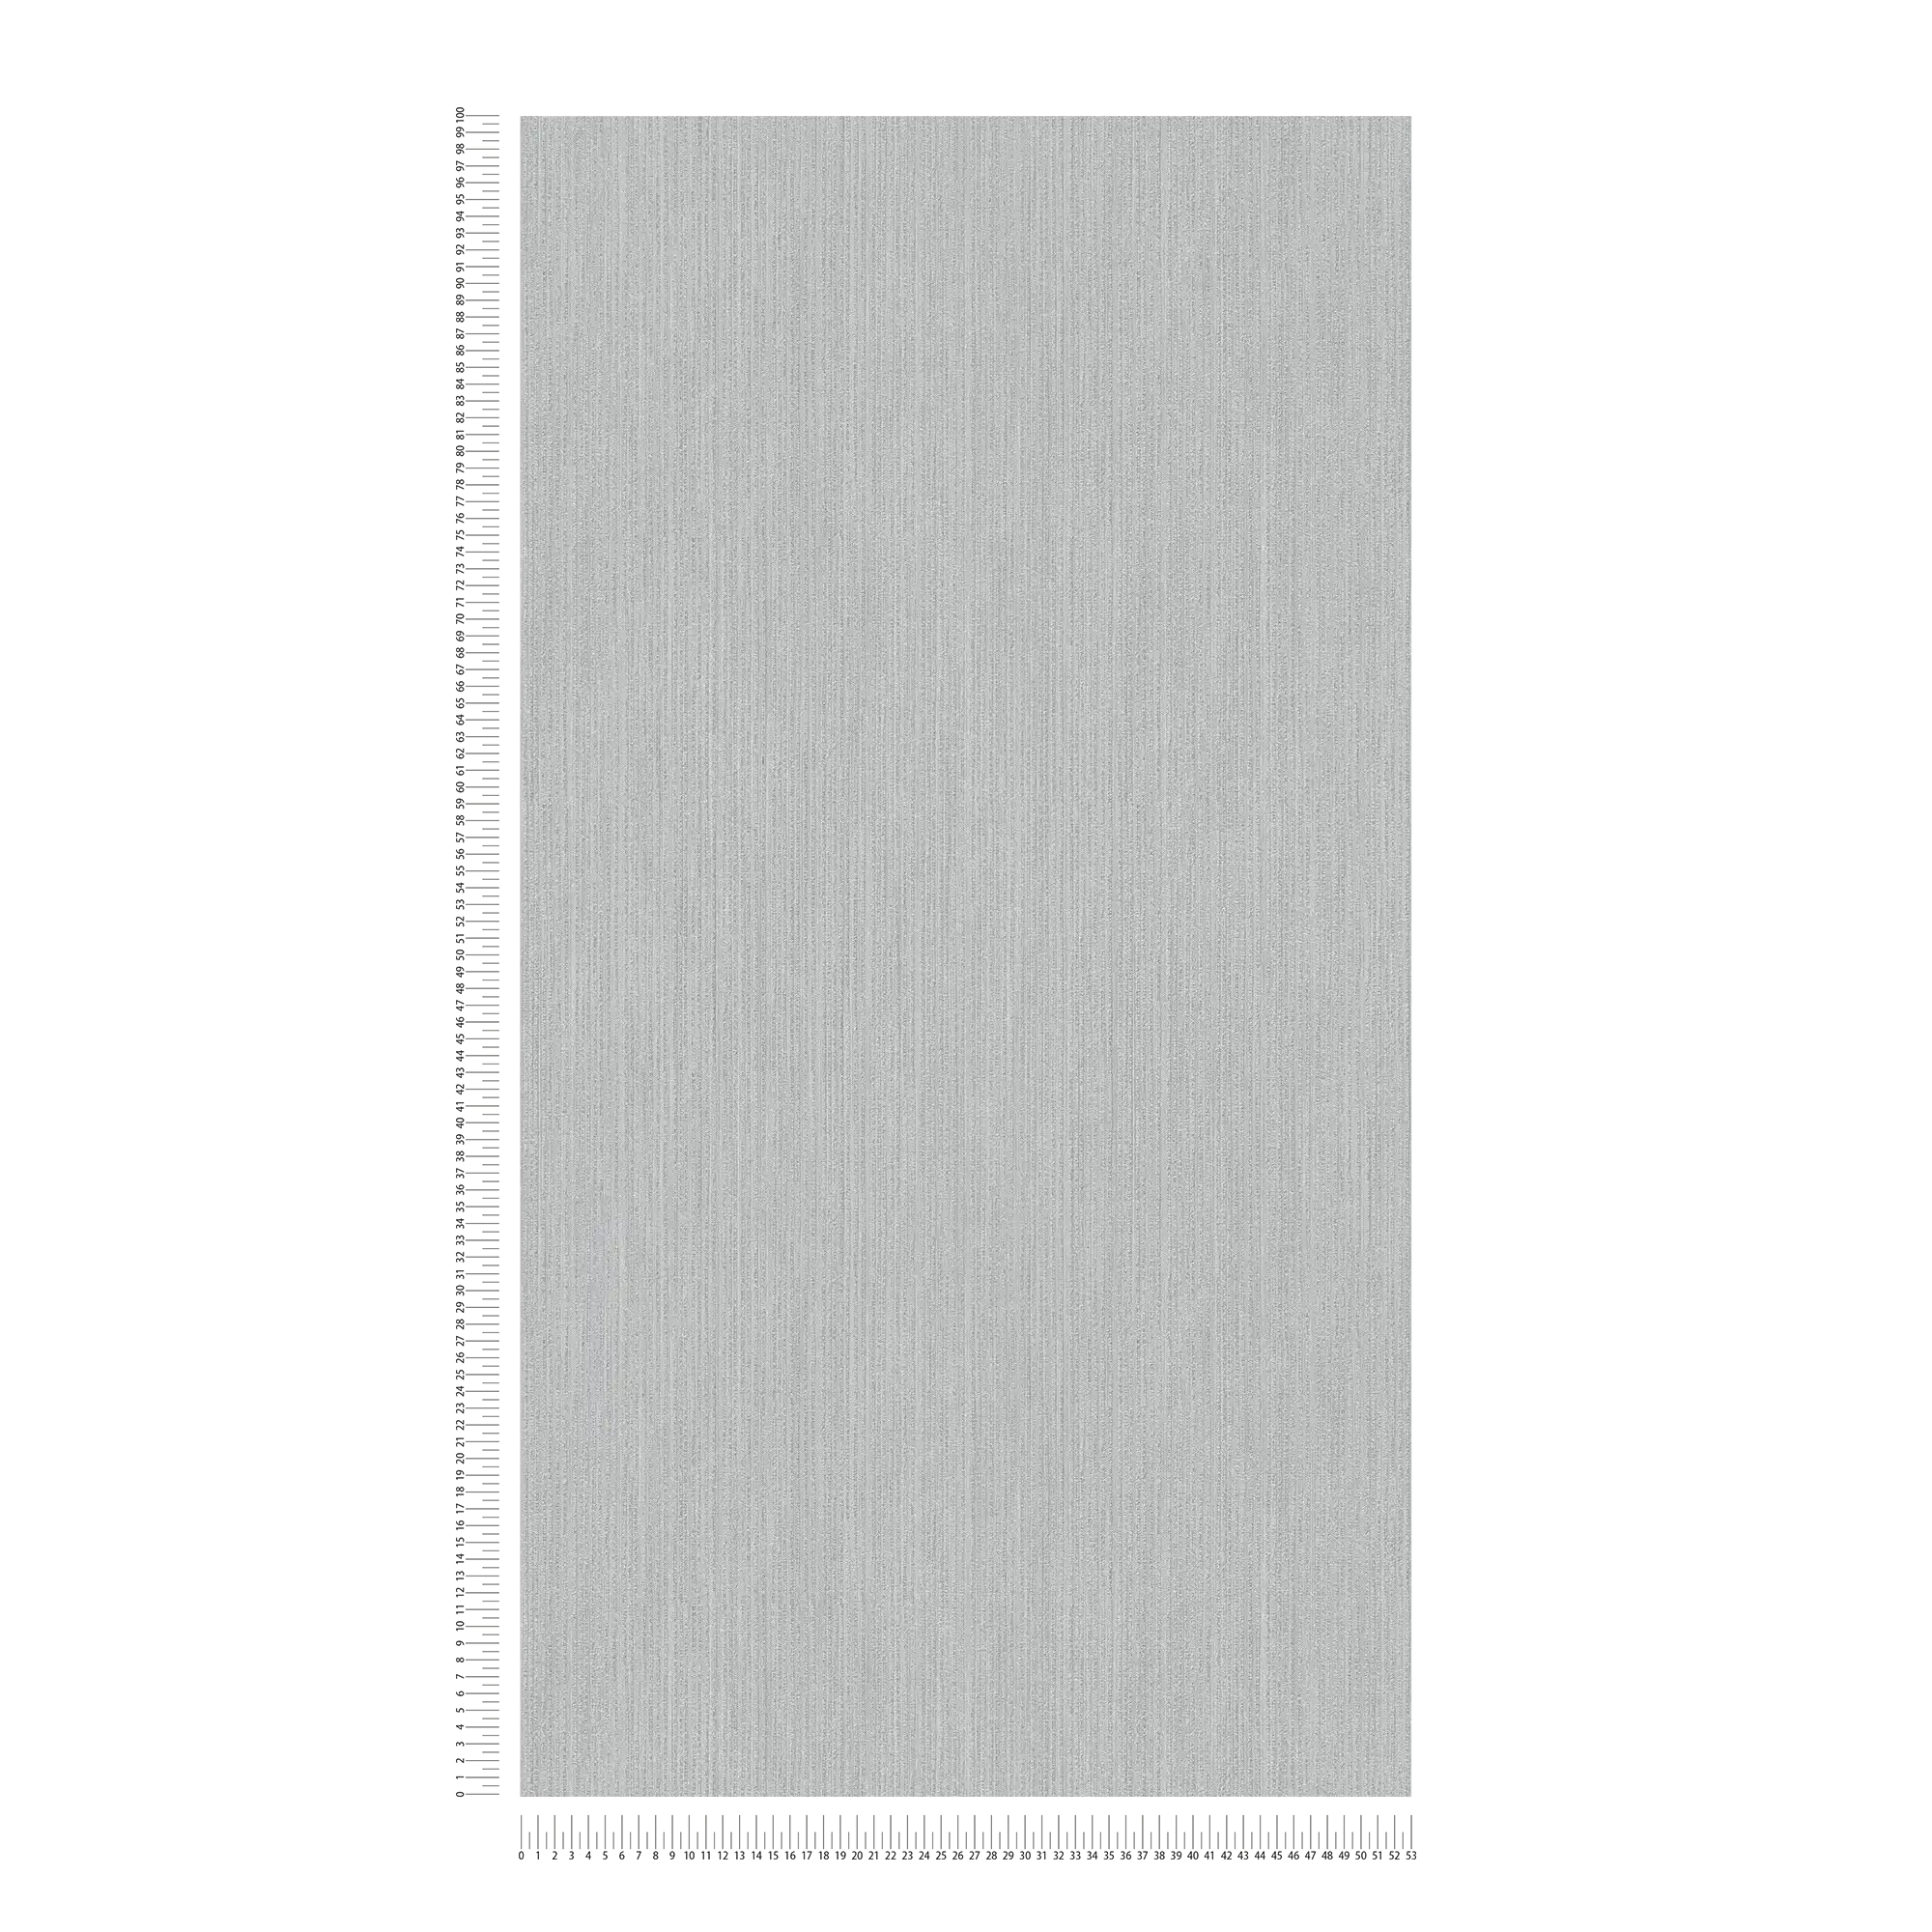             Papel pintado de unidad MICHALSKY con patrón de textura forrado - gris
        